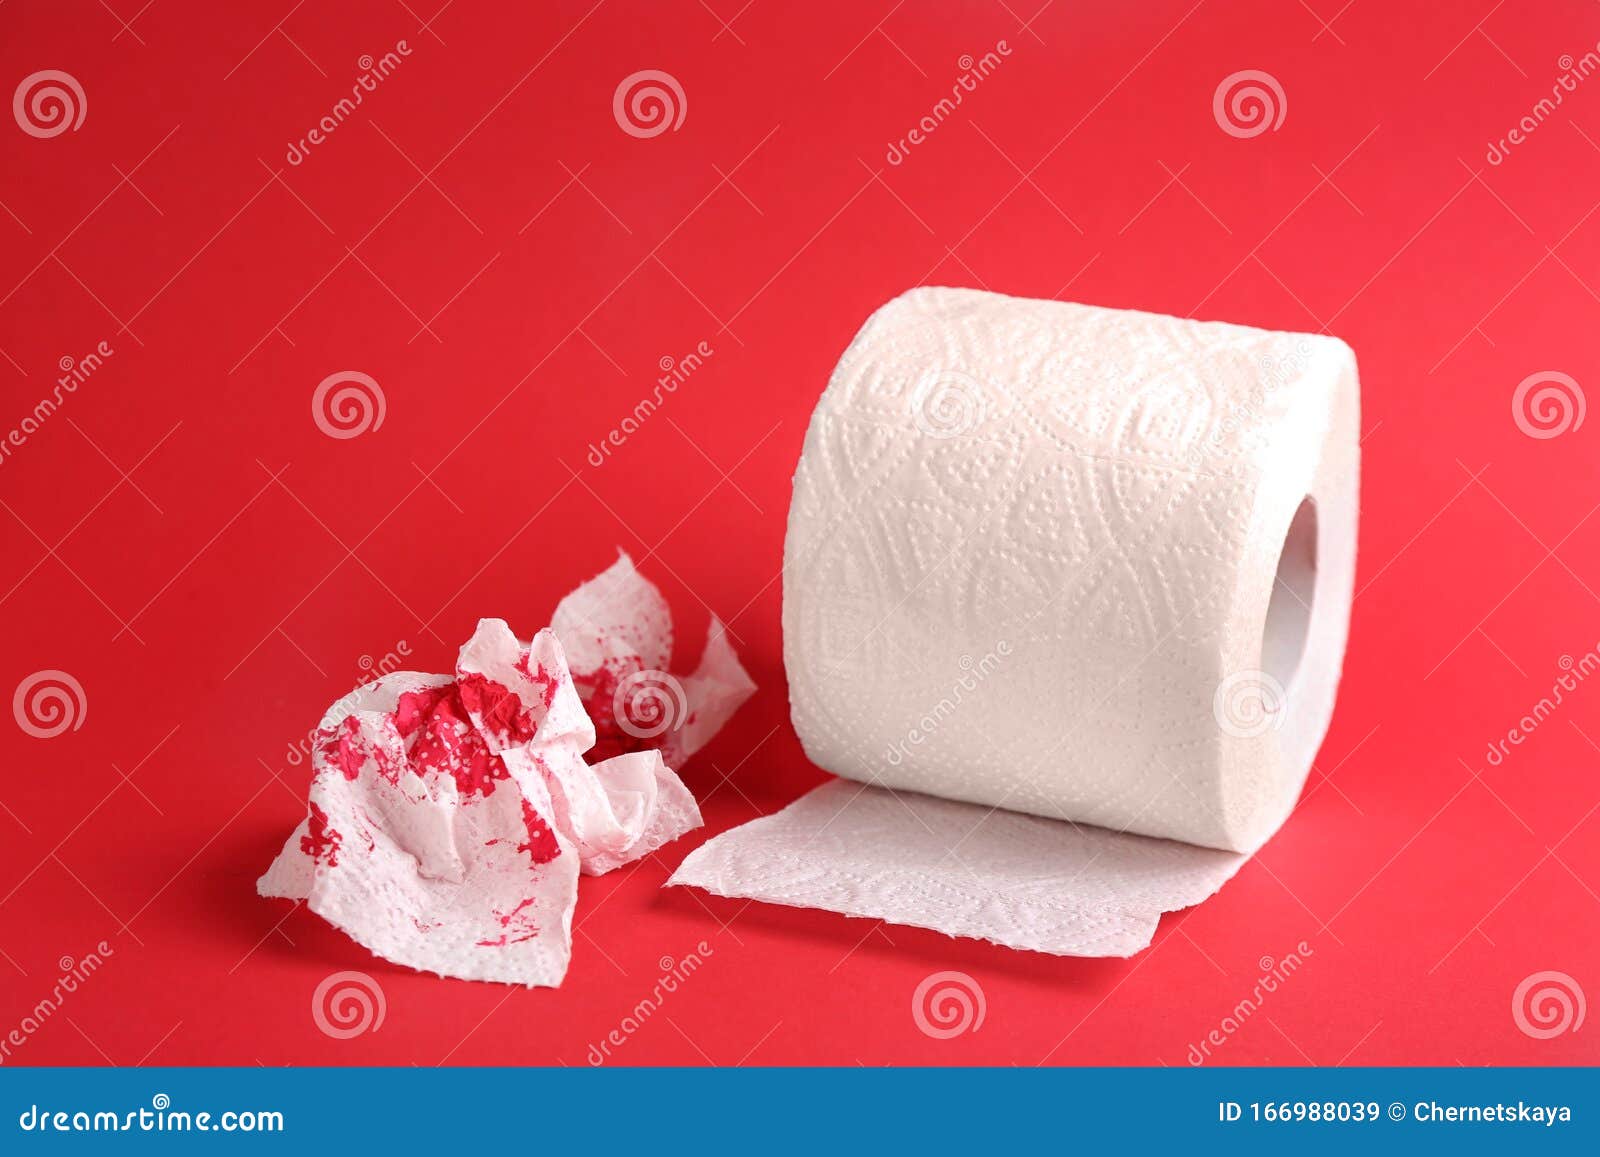 Кровь на туалетной бумаге. Туалетная бумага Кровавая. Розовая кровь на туалетной бумаге. Геморрой от туалетной бумаги. После туалета на бумаге кровь по большому